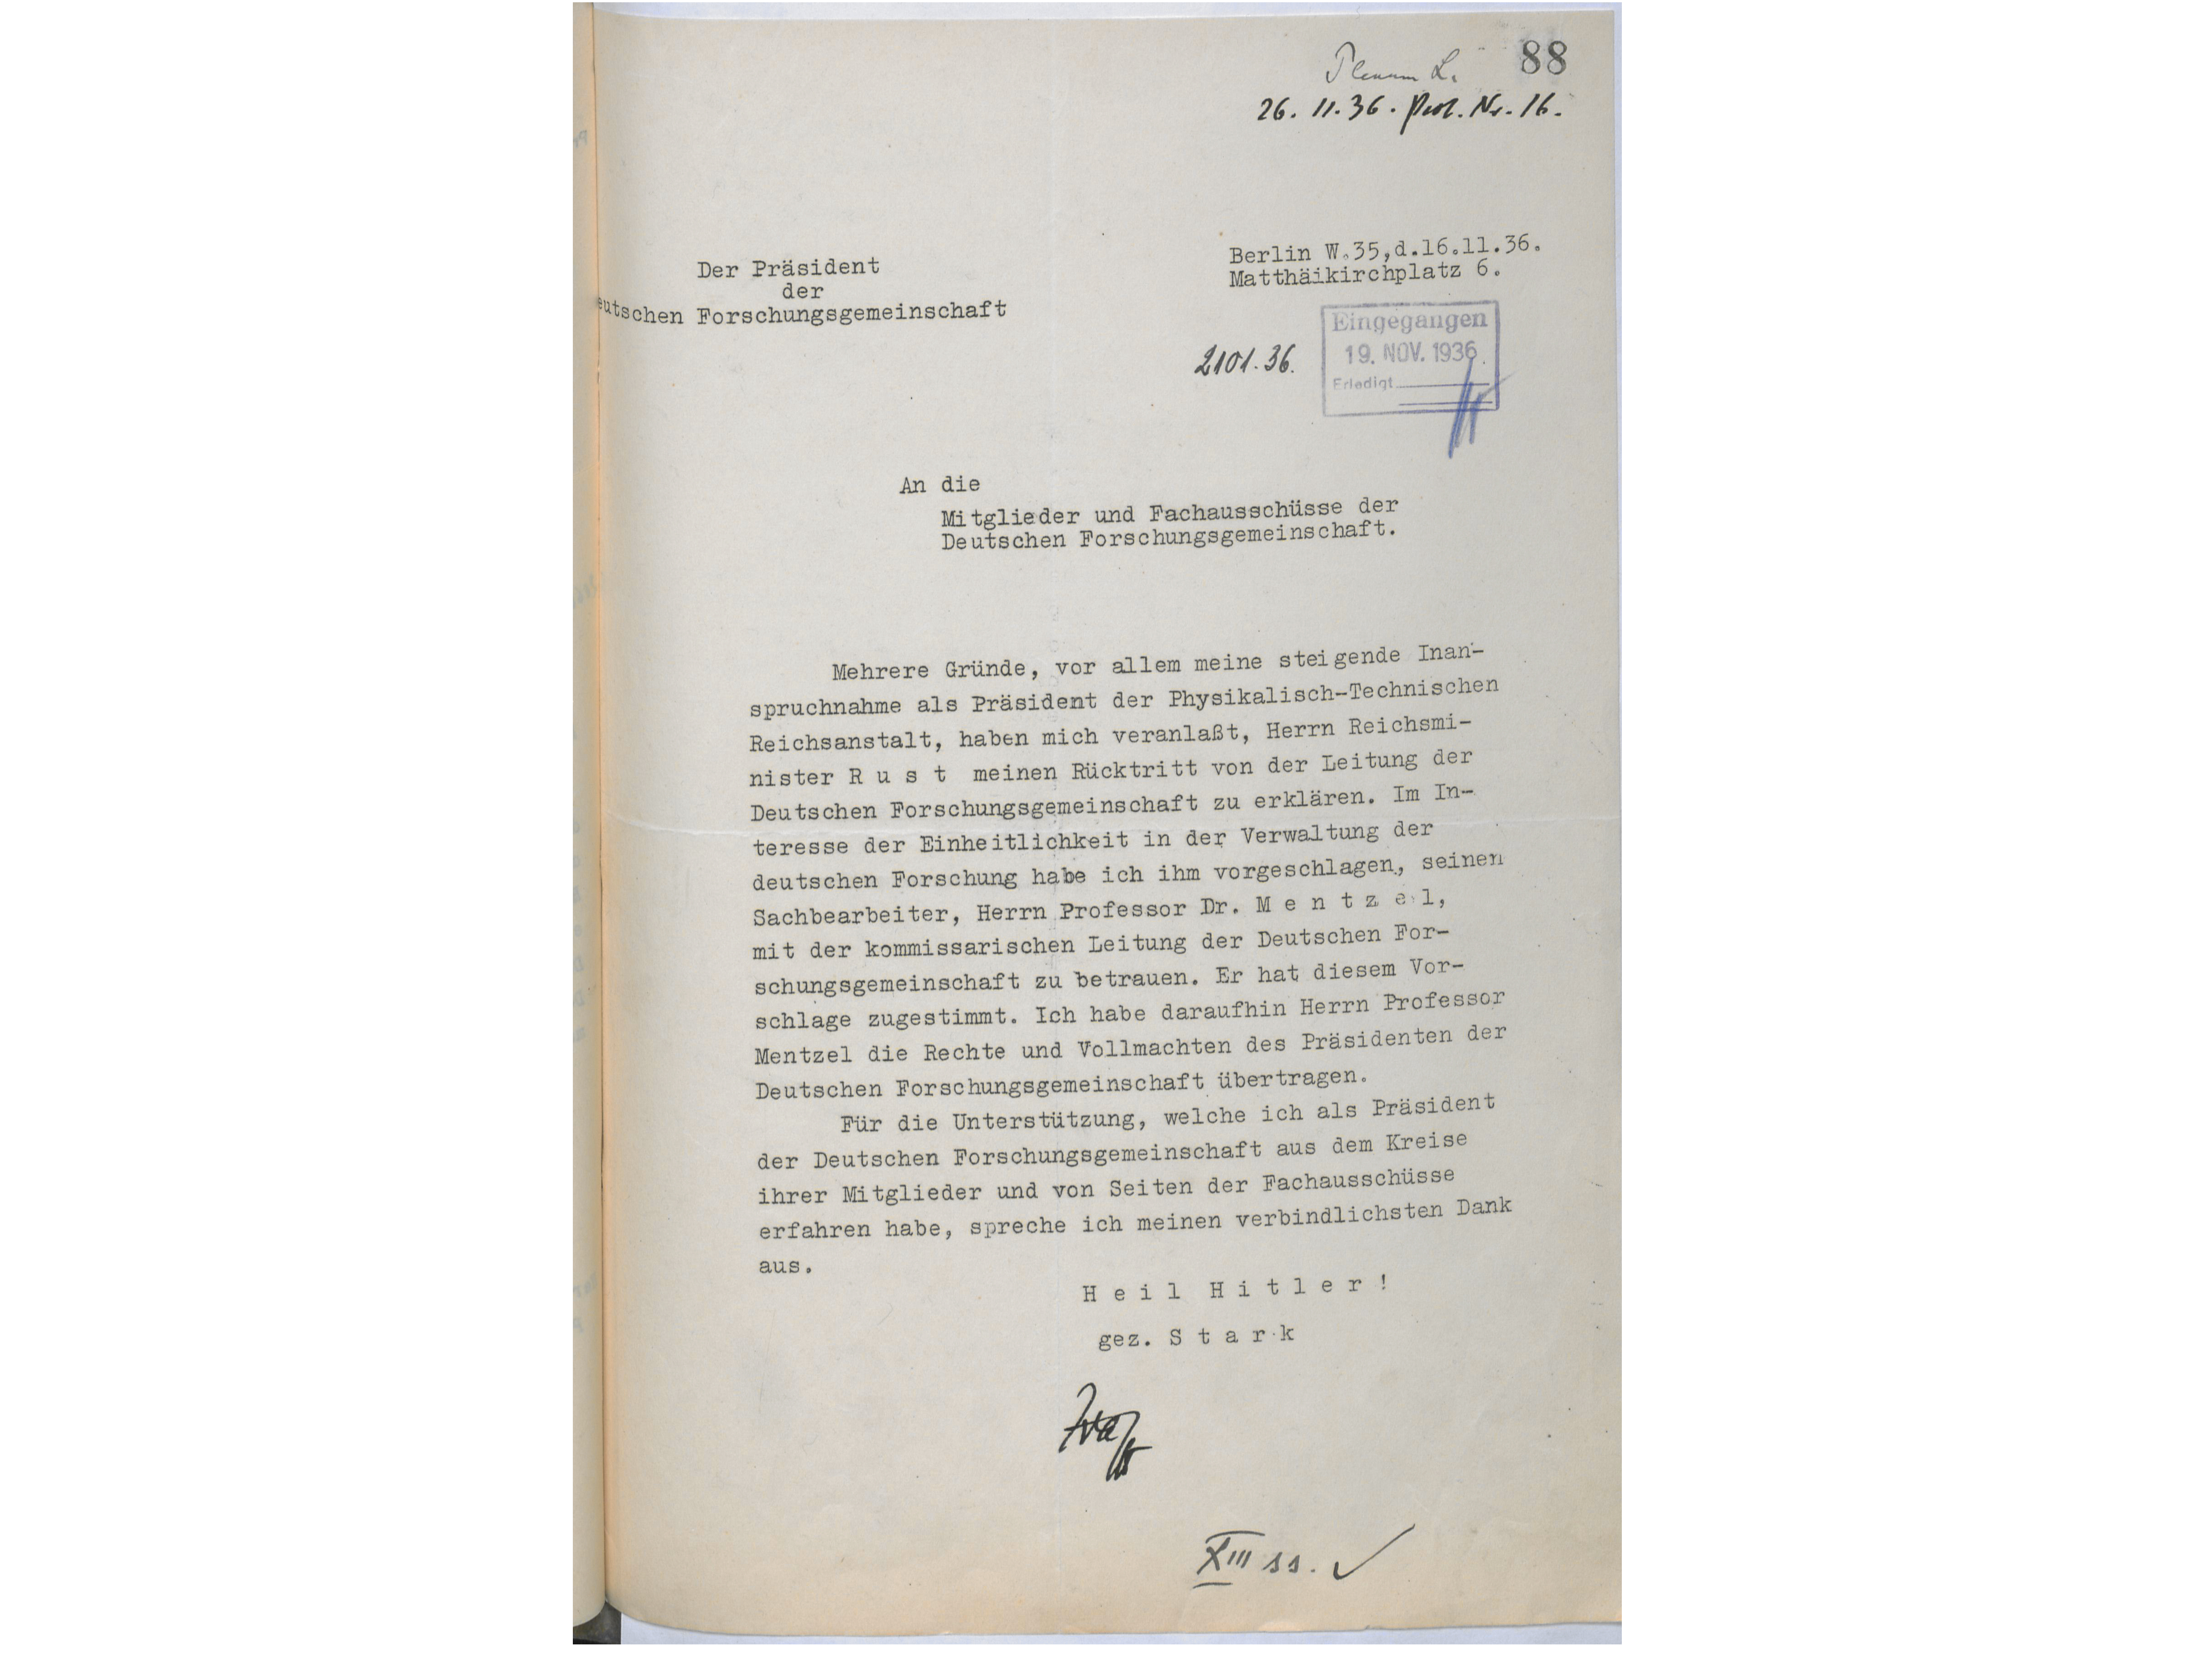 Stark's letter of resignation dated 26 November 1936